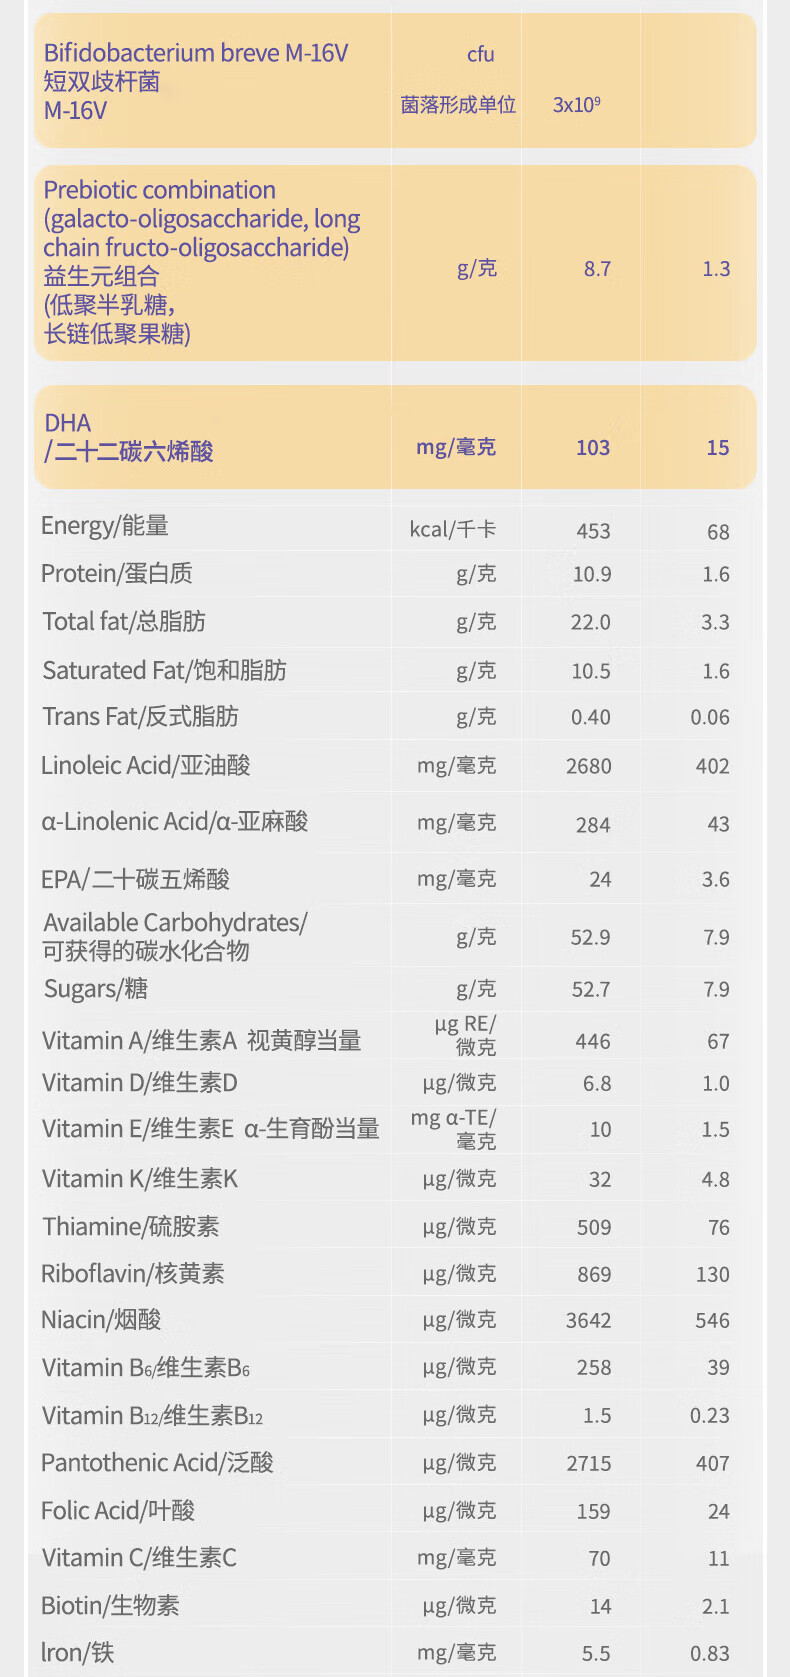 新西兰原装进口 中国香港爱他美(Aptamil) 白金致亲版 幼儿配方奶粉3段（1-3岁） 900g